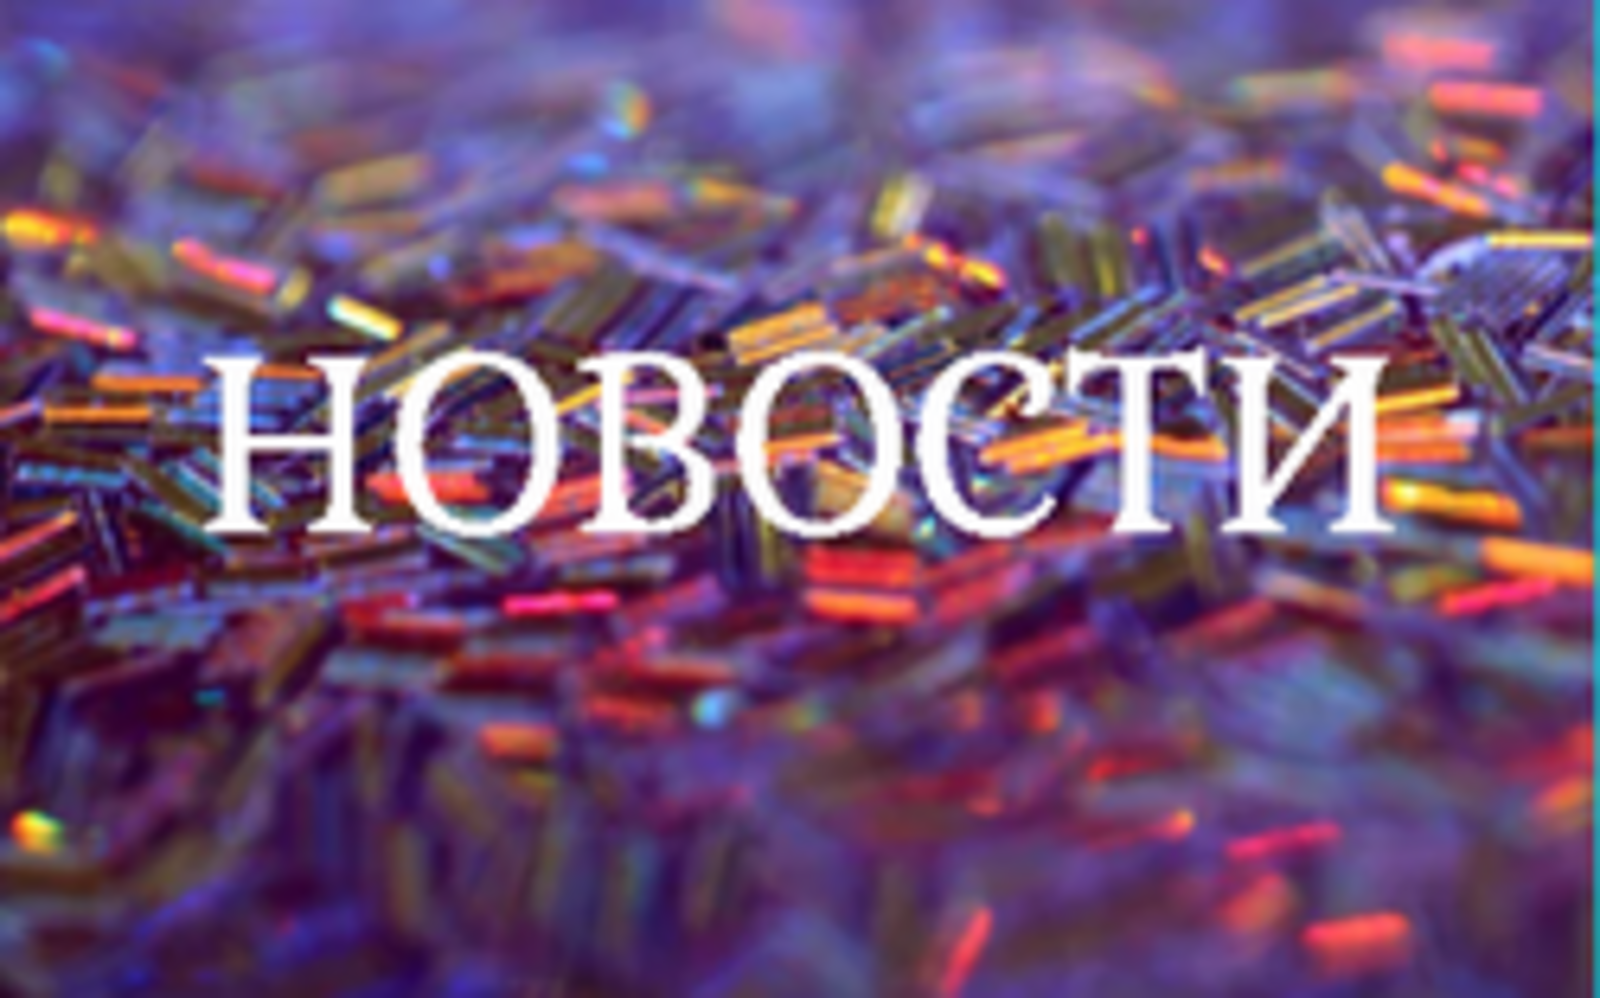 Экология в Башкортостане: брифинг в прямом эфире